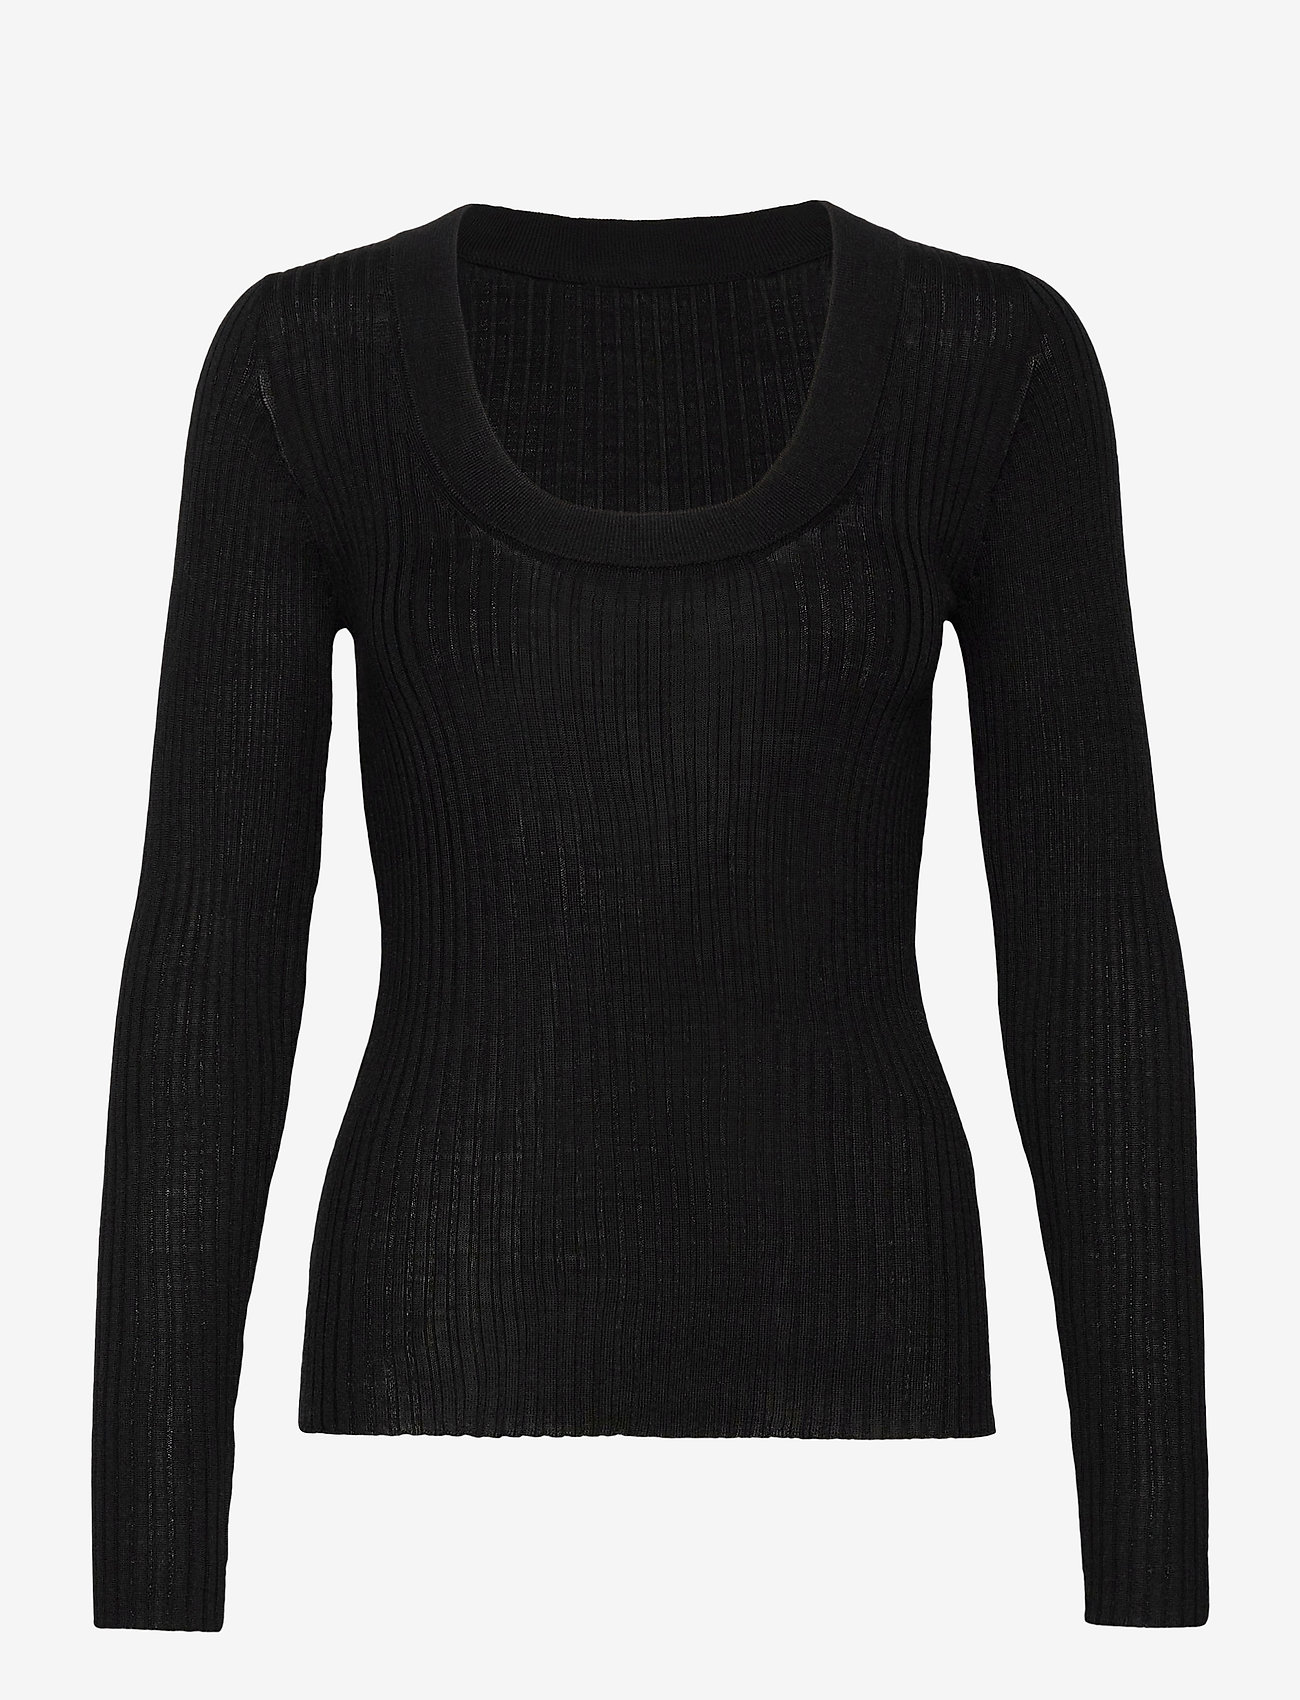 Selected Femme - SLFCOSTA NEW LS KNIT DEEP U-NECK - swetry - black - 0